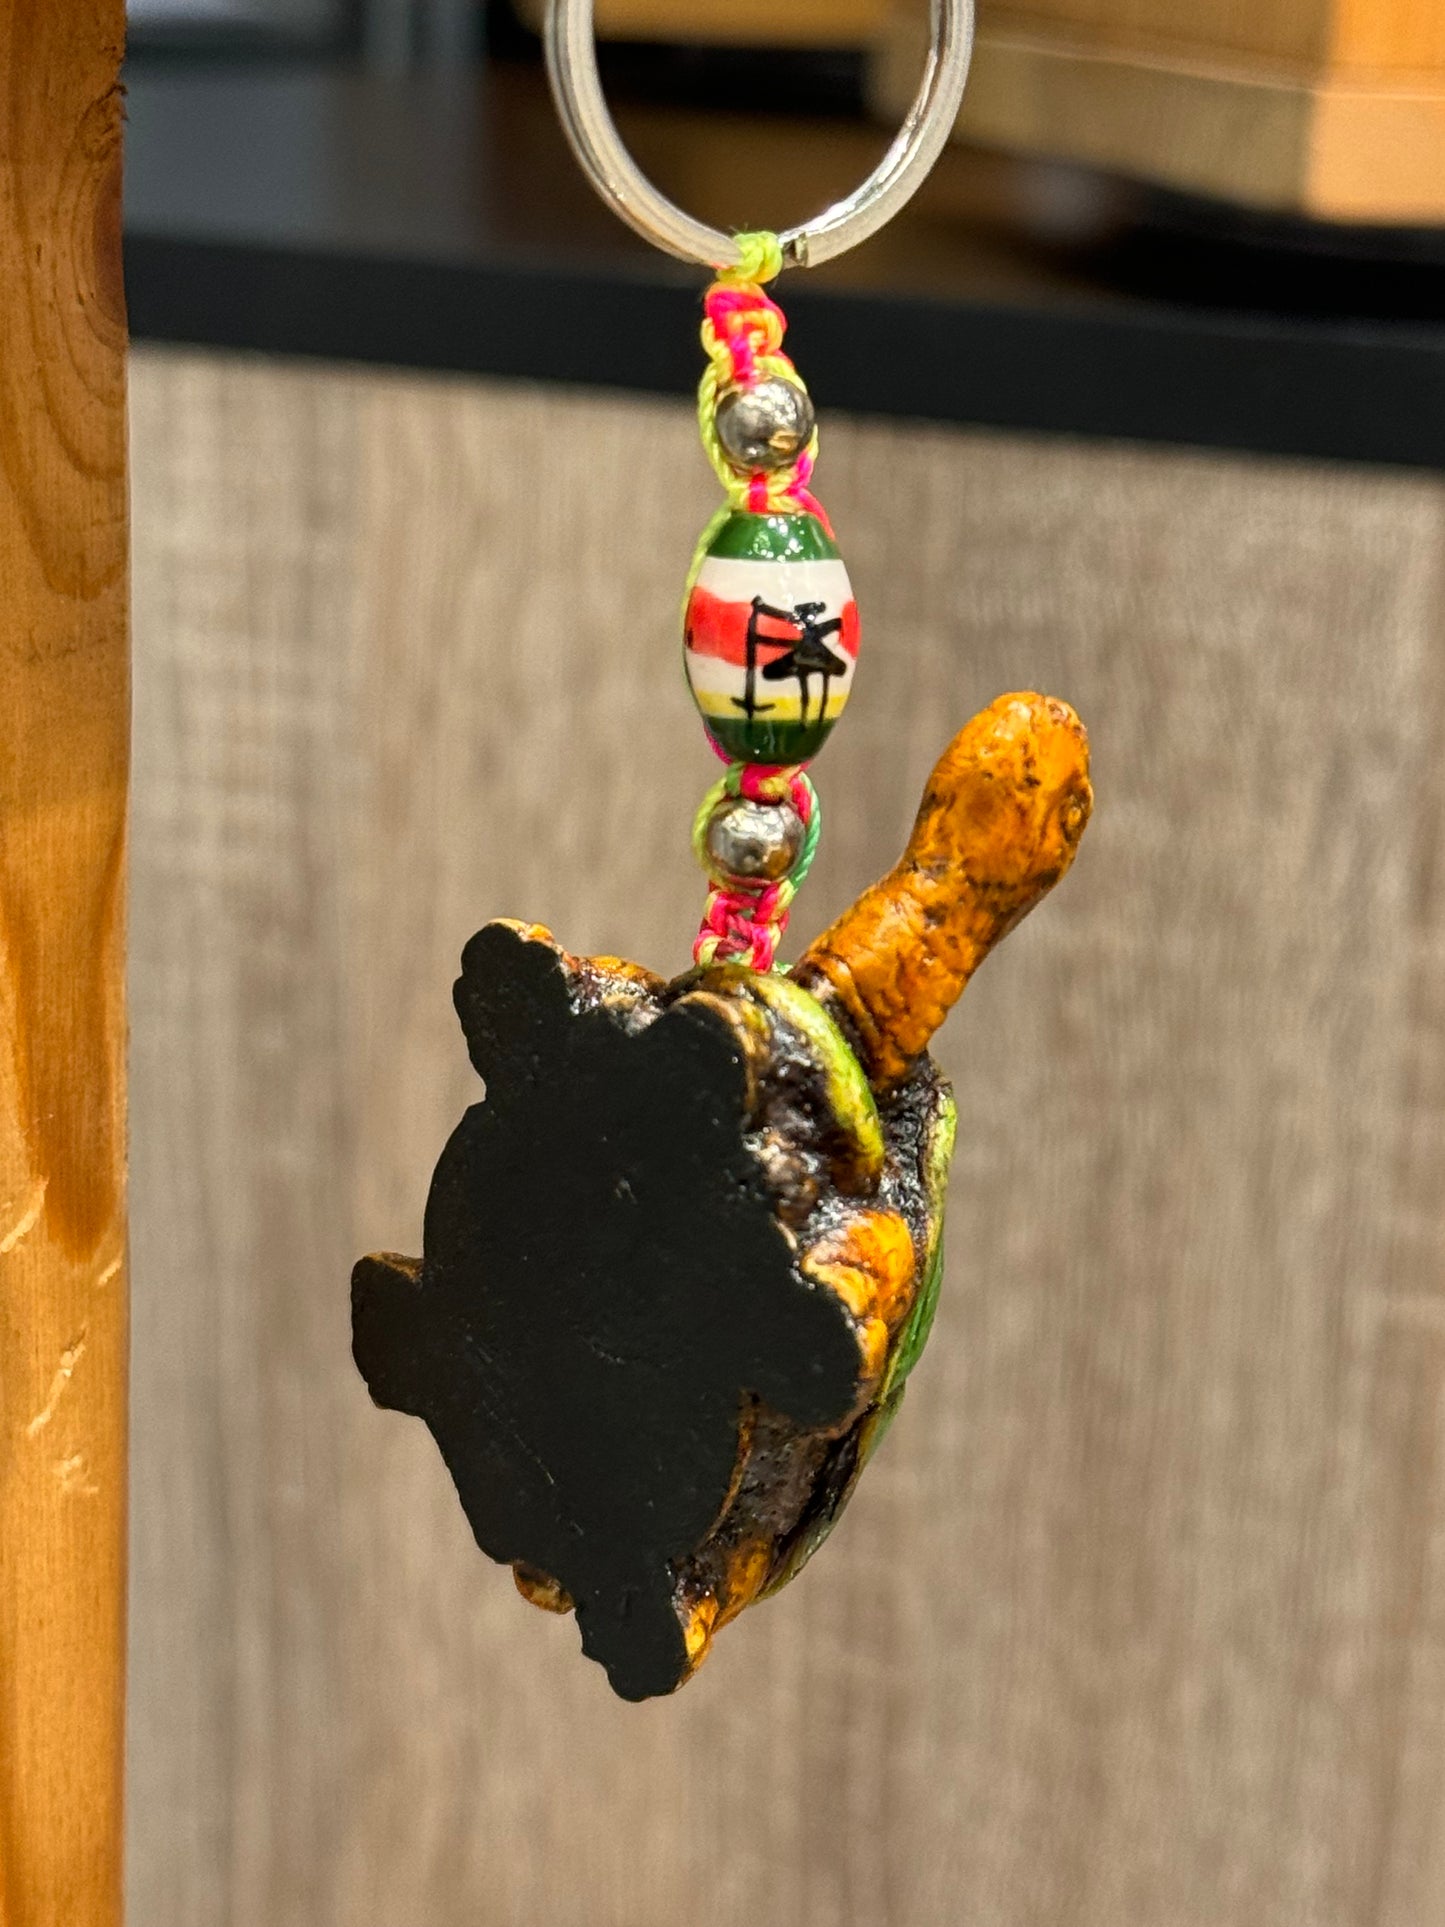 Turtle Land Animal Durepox Resin Figurine Keychain Multi Color Cord